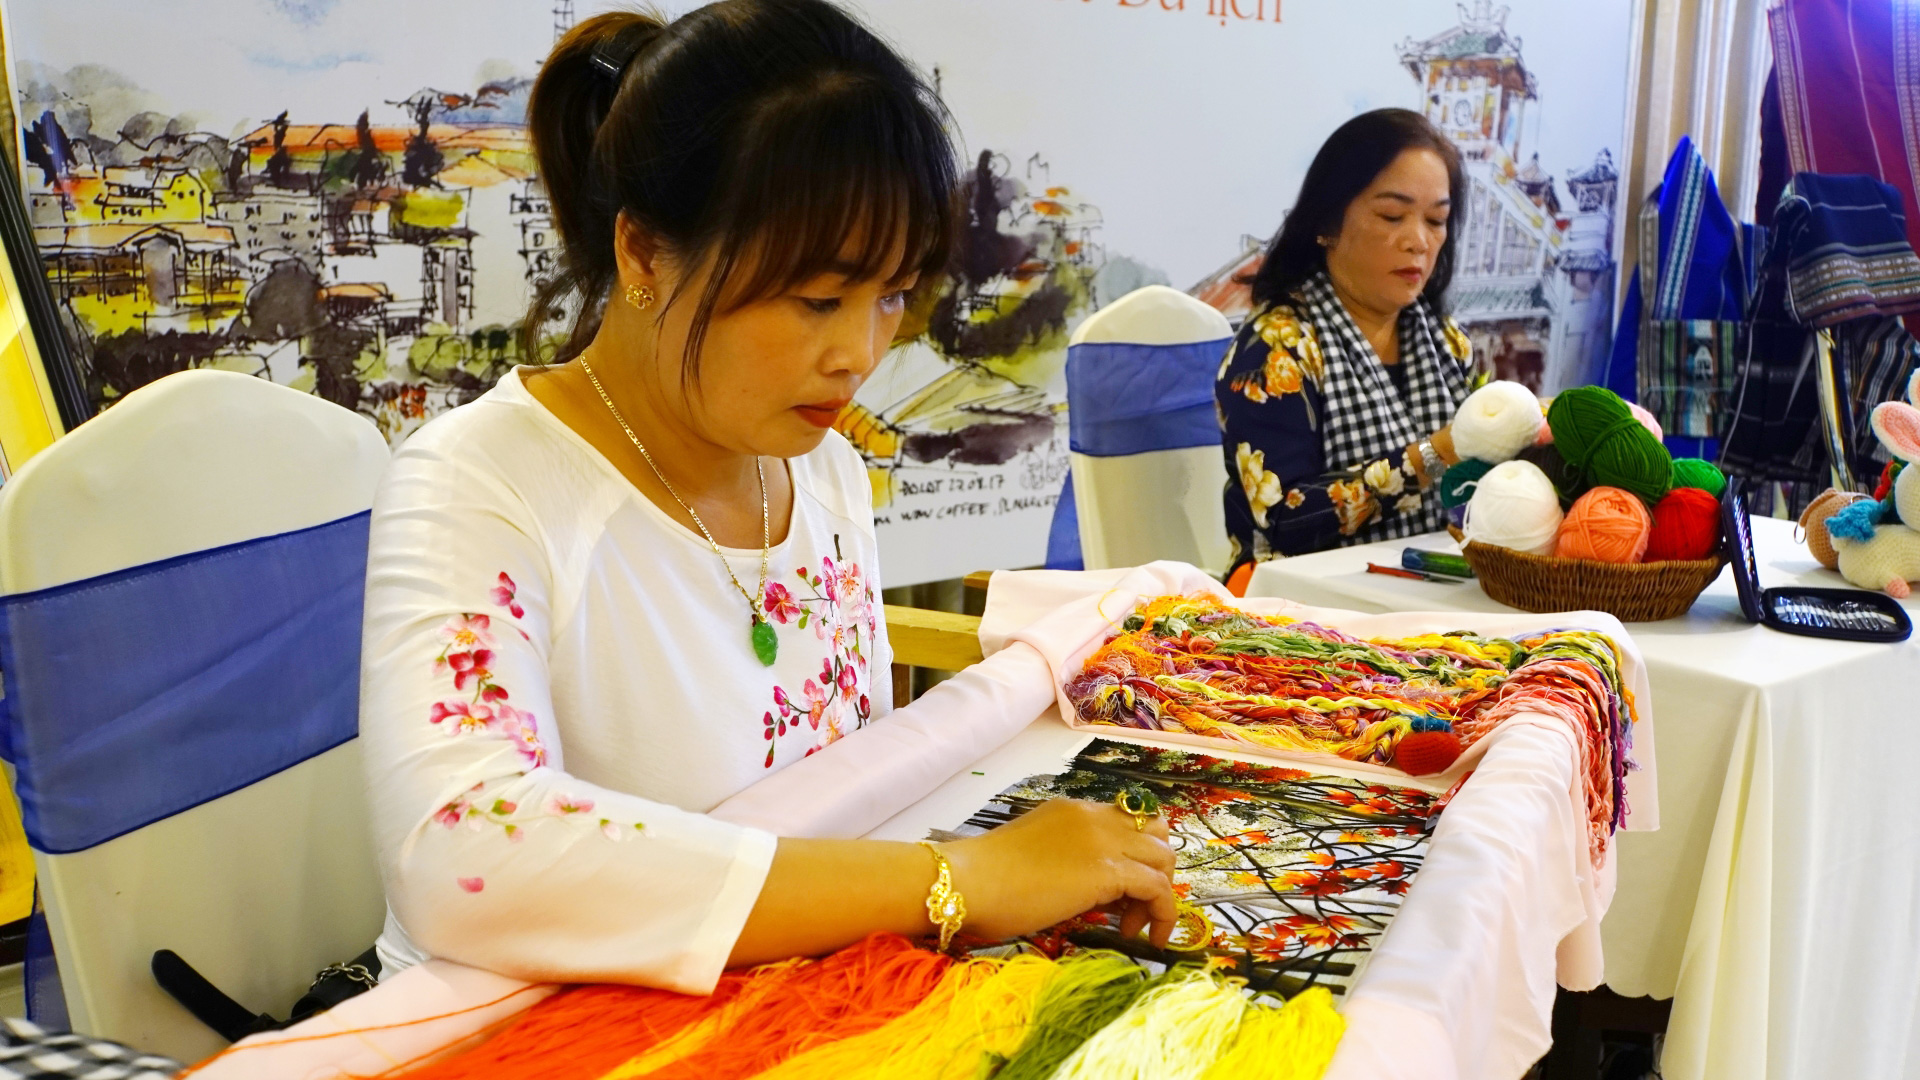 Tranh thêu tay Hữu Hạnh Đà Lạt, một trong những sản phẩm tiêu biểu được ngành Du lịch Lâm Đồng mang đến giới thiệu tại Đồng Tháp, TP Cần Thơ